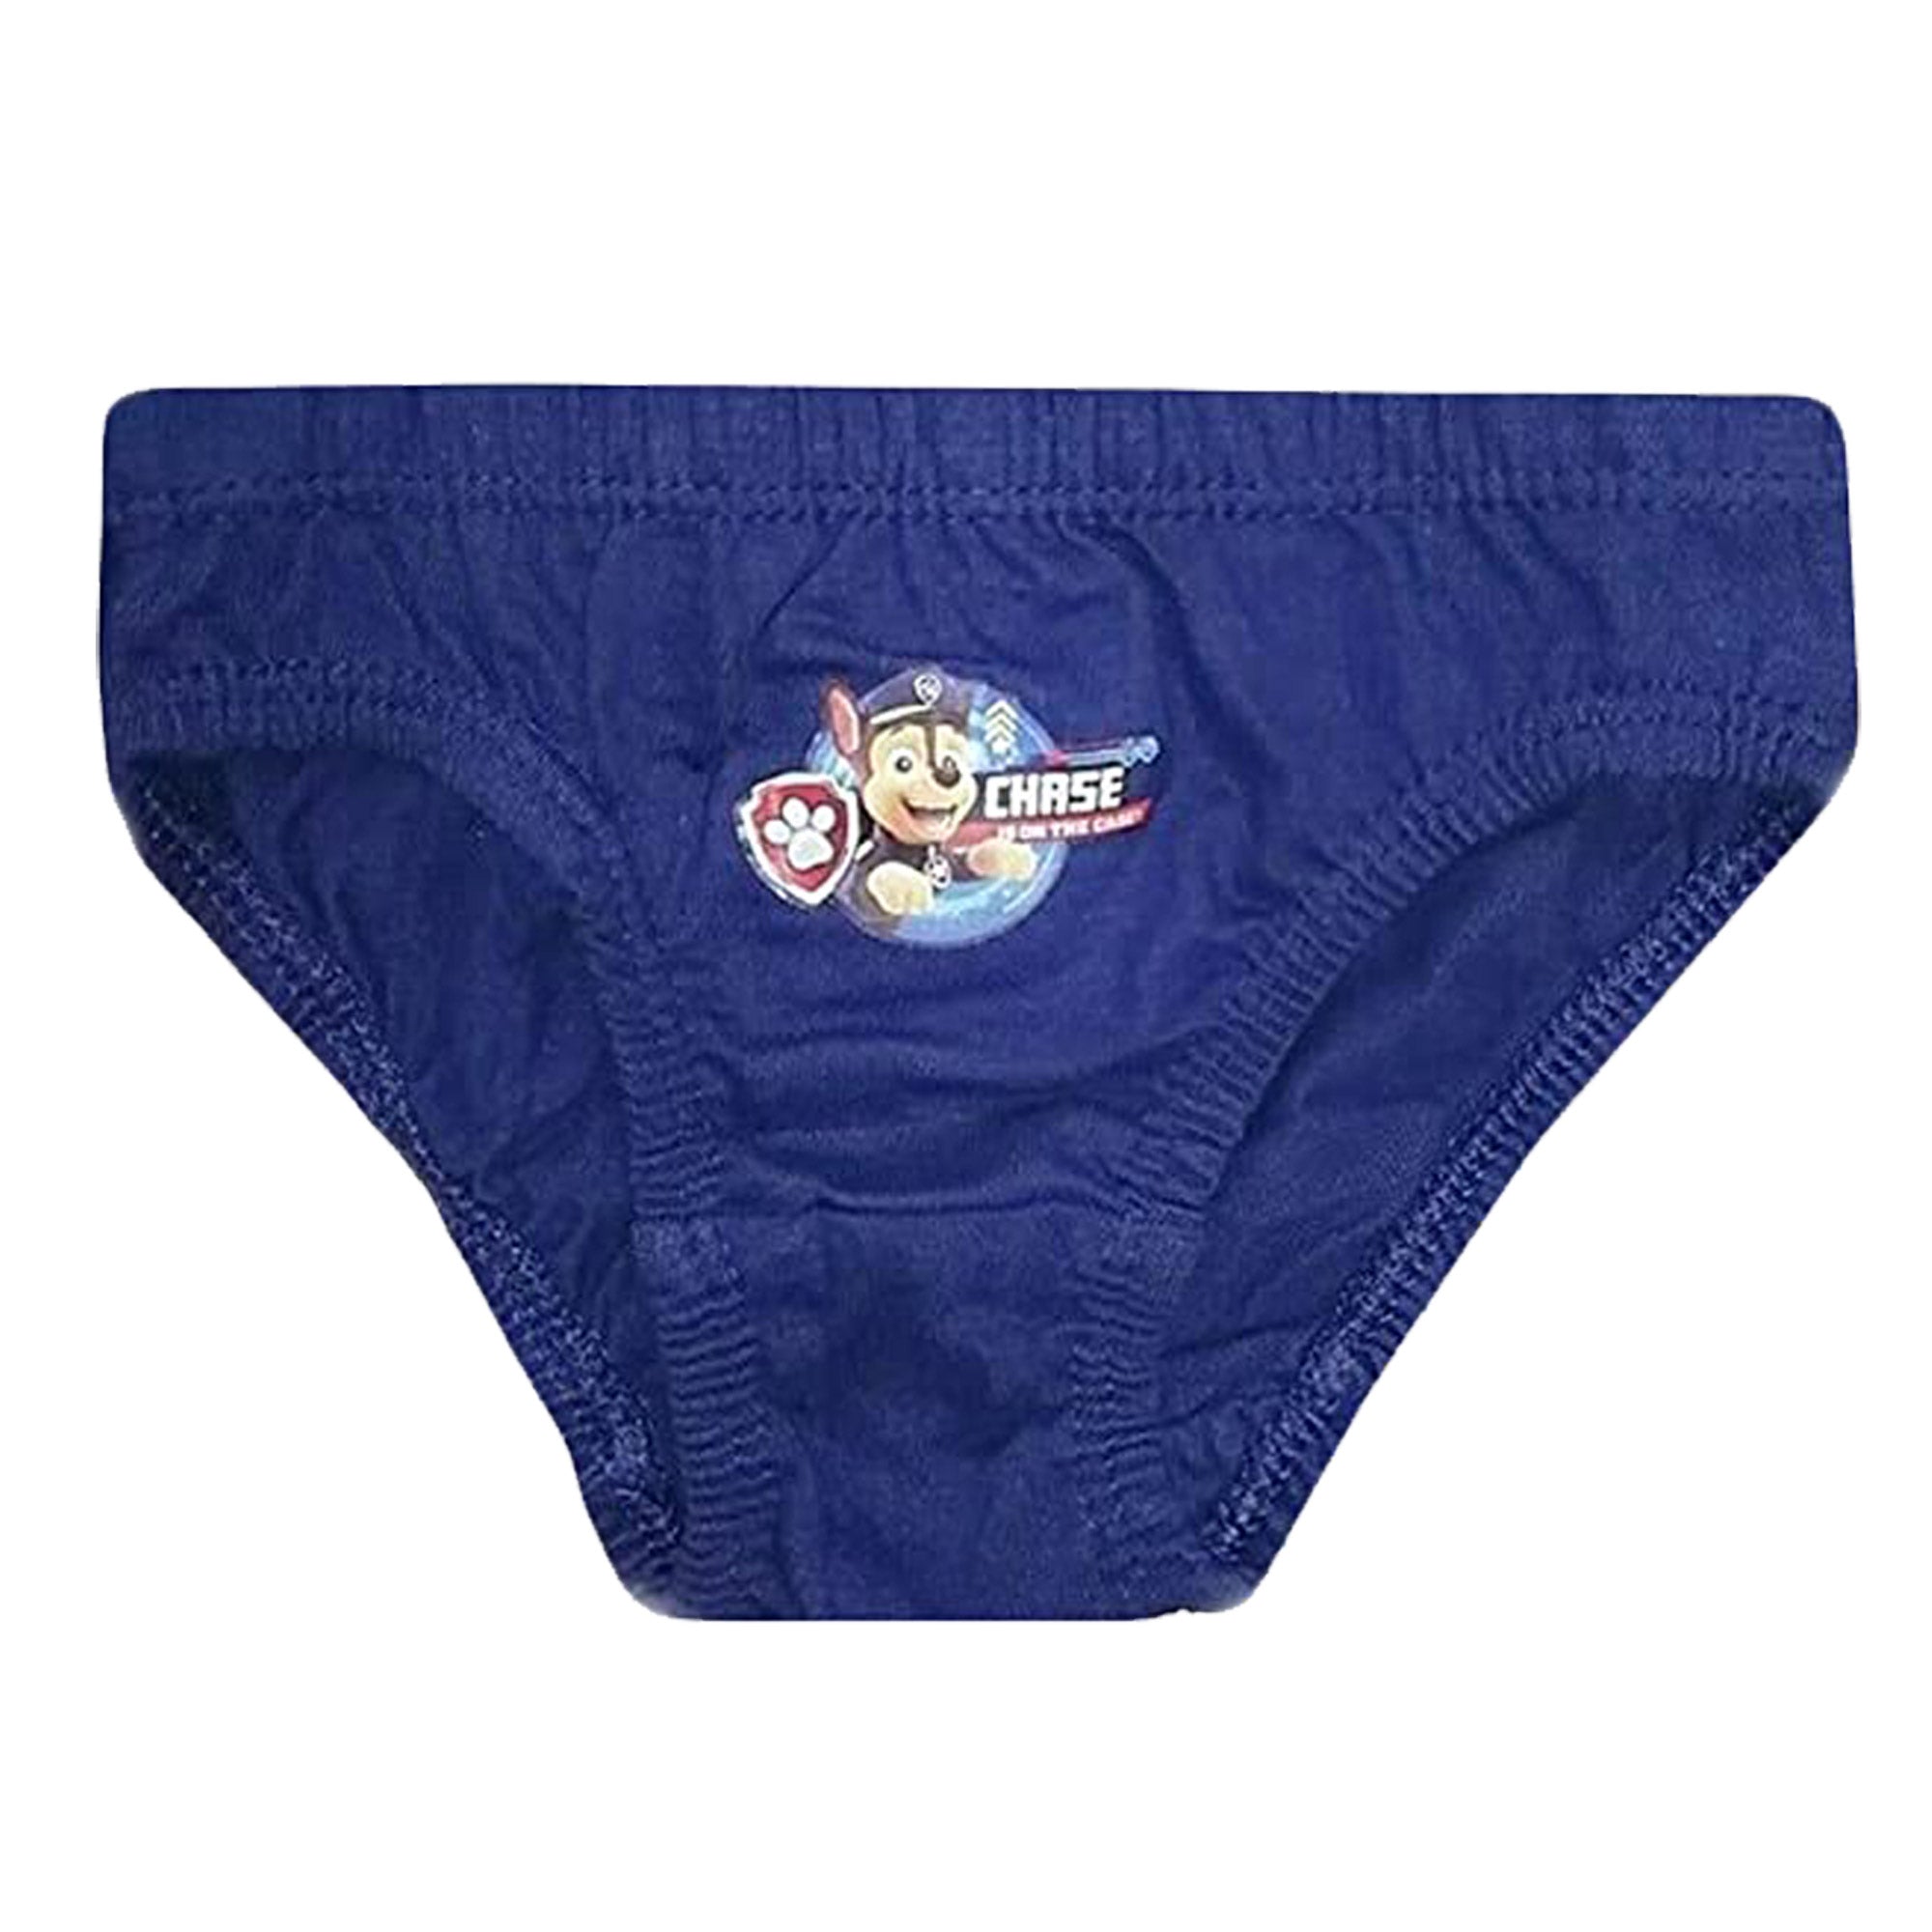 Paw Patrol Kids Underwear Briefs Pants Blue 3 Pack Sizes 18 months to 5 Years dark blue detail